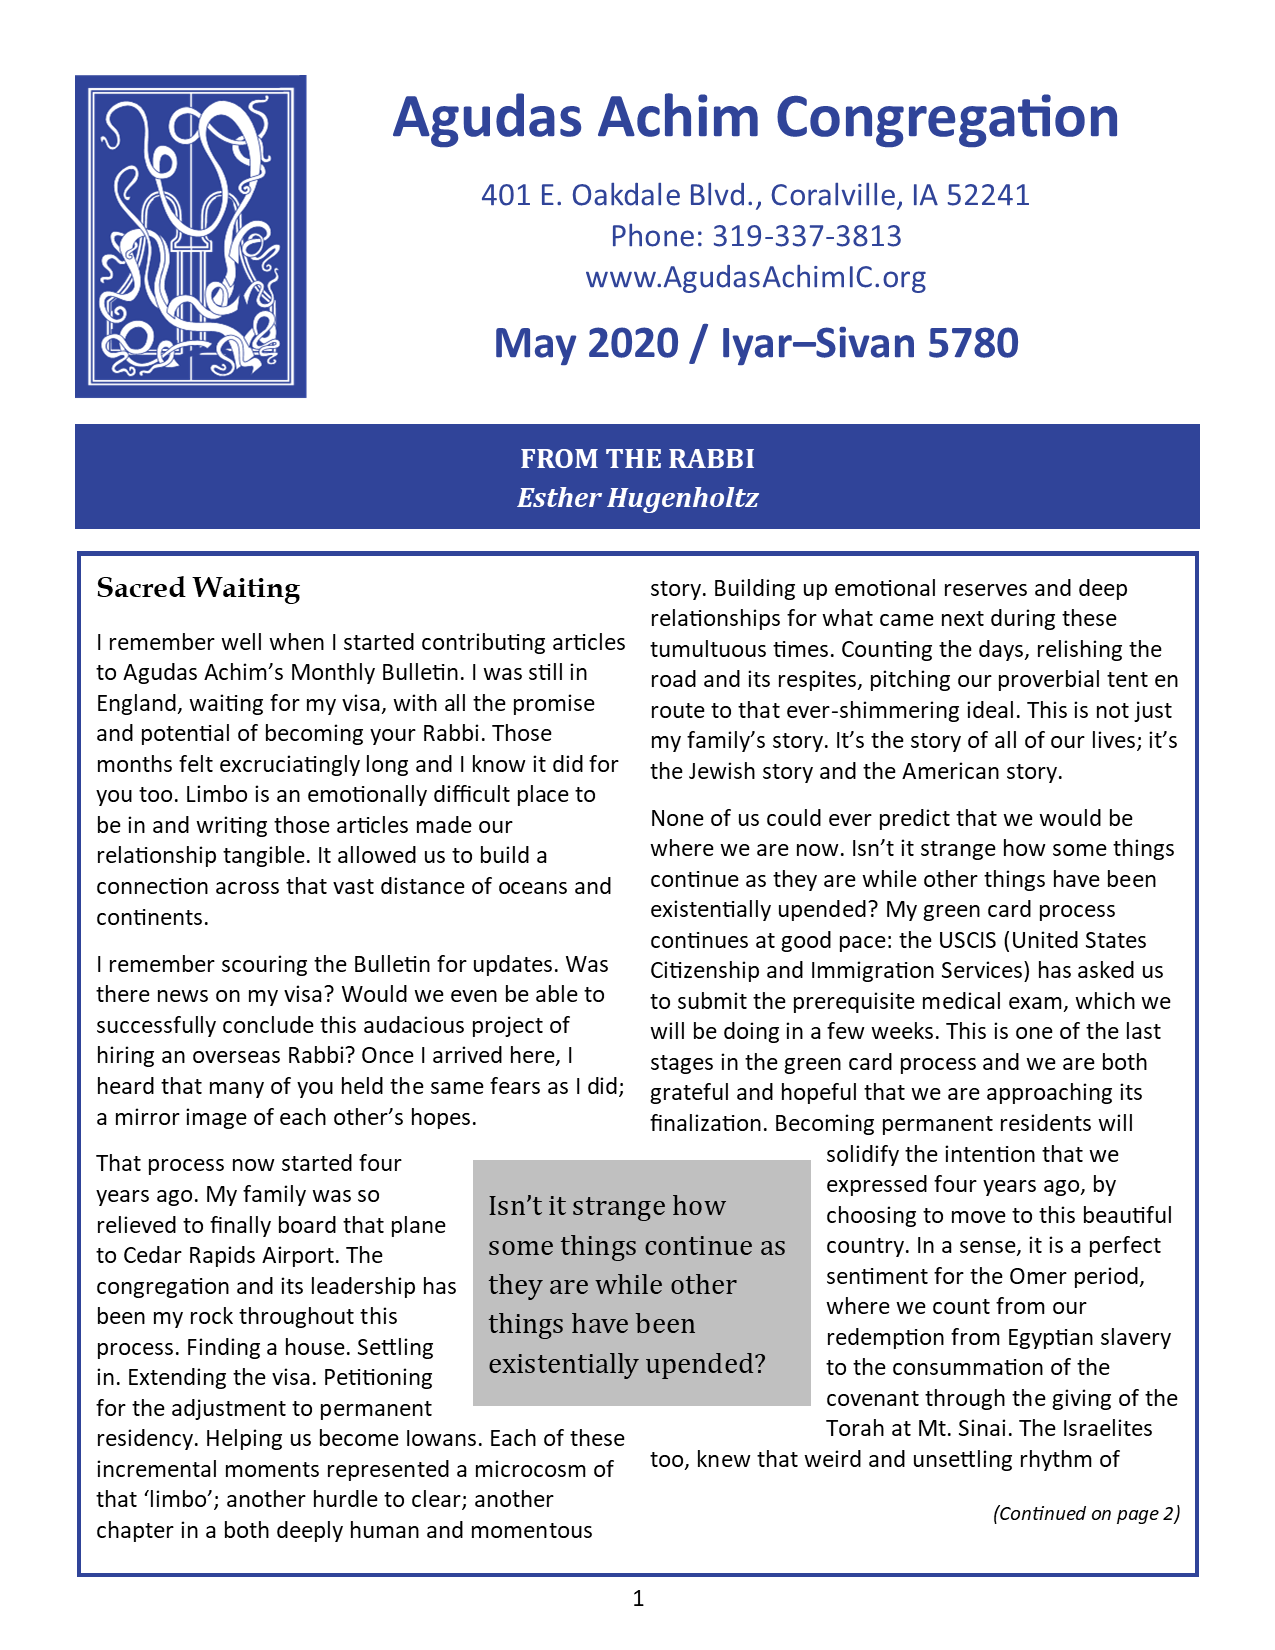 May 2020 Bulletin